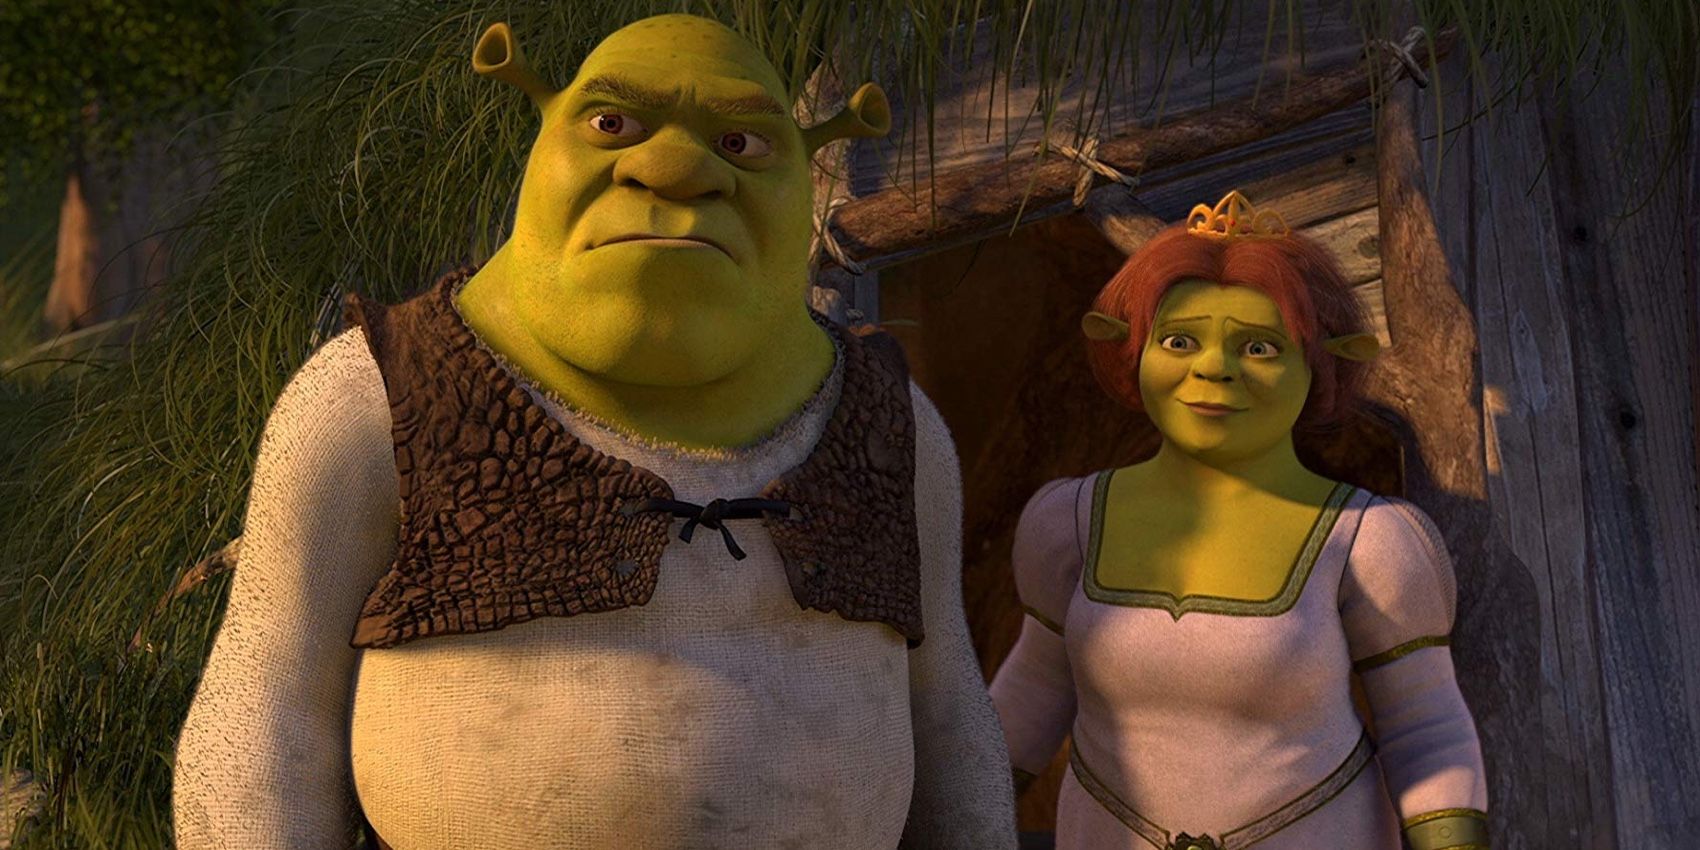 Shrek and Fiona in Shrek 2